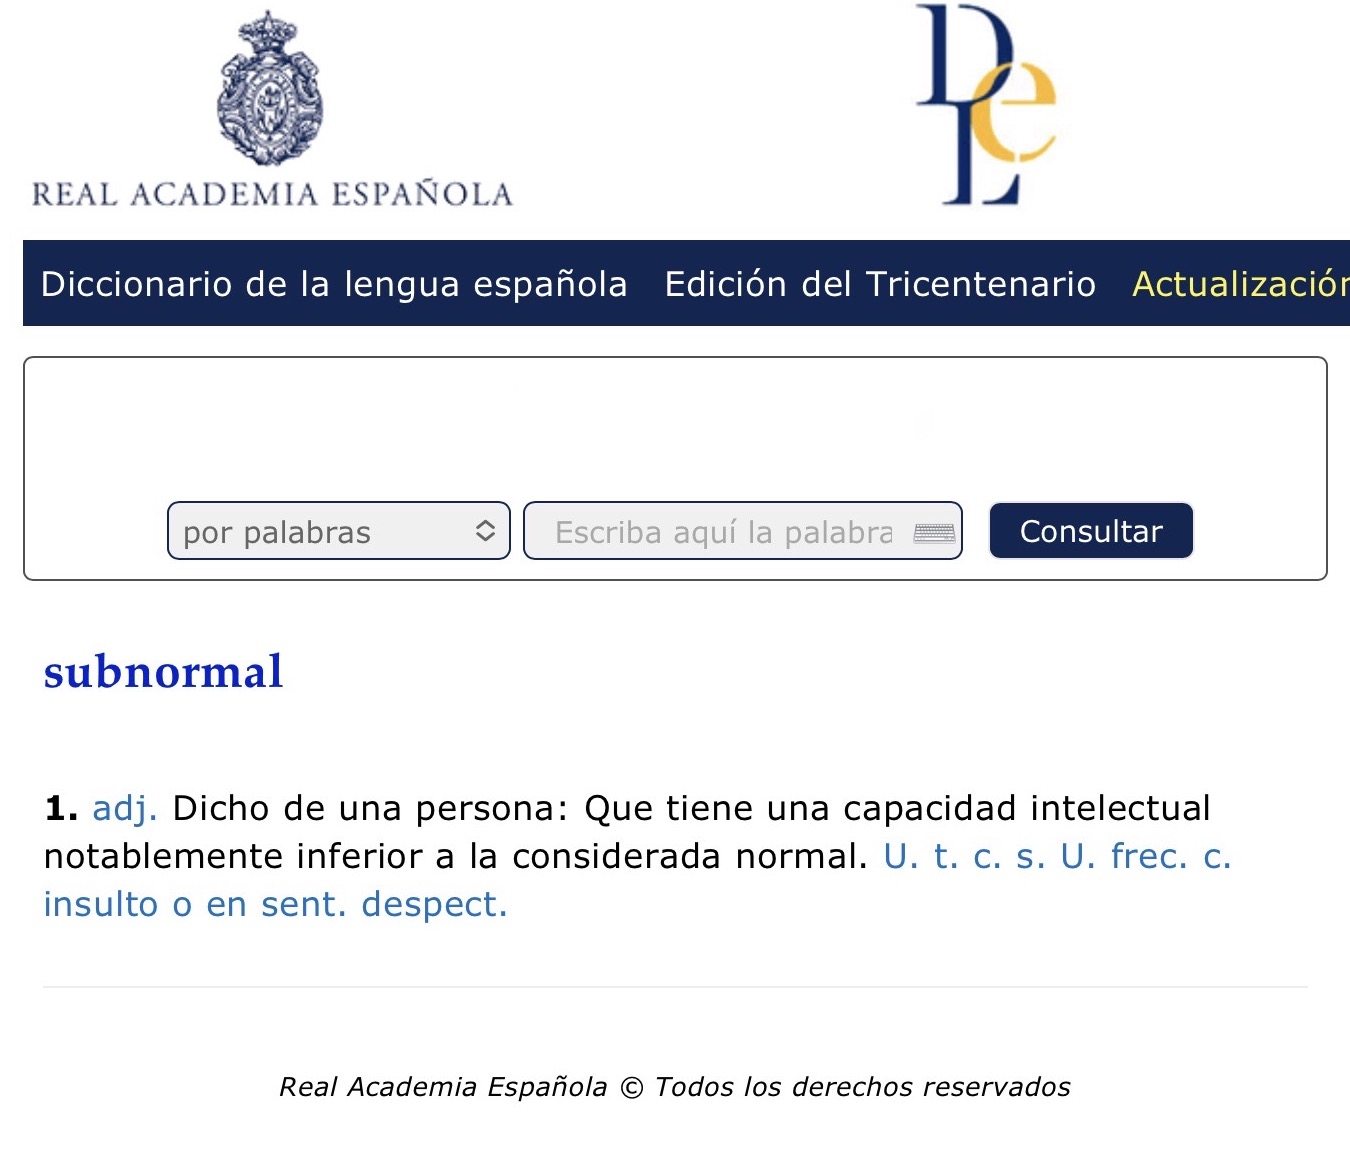 Captura de pantalla del diccionario online de la Real Academia Española con la entrada "subnormal": Dicho de una persona: Que tiene una capacidad intelectual inferior a la considerada normal. Insulto o en sentido despectivo.